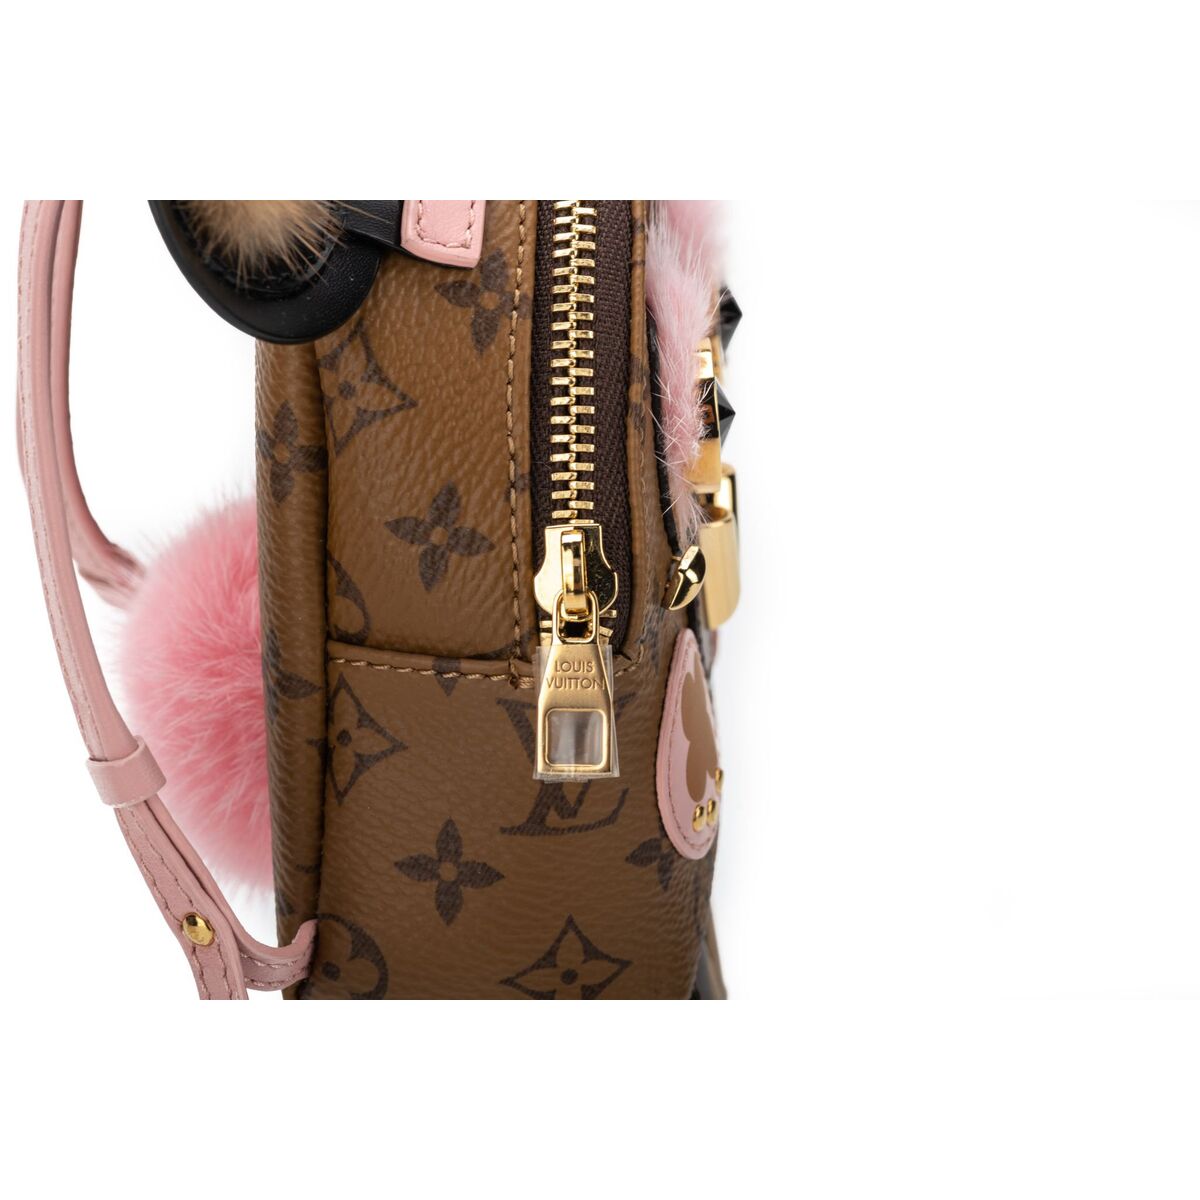 Owl Backpack Keychain Bag Charm